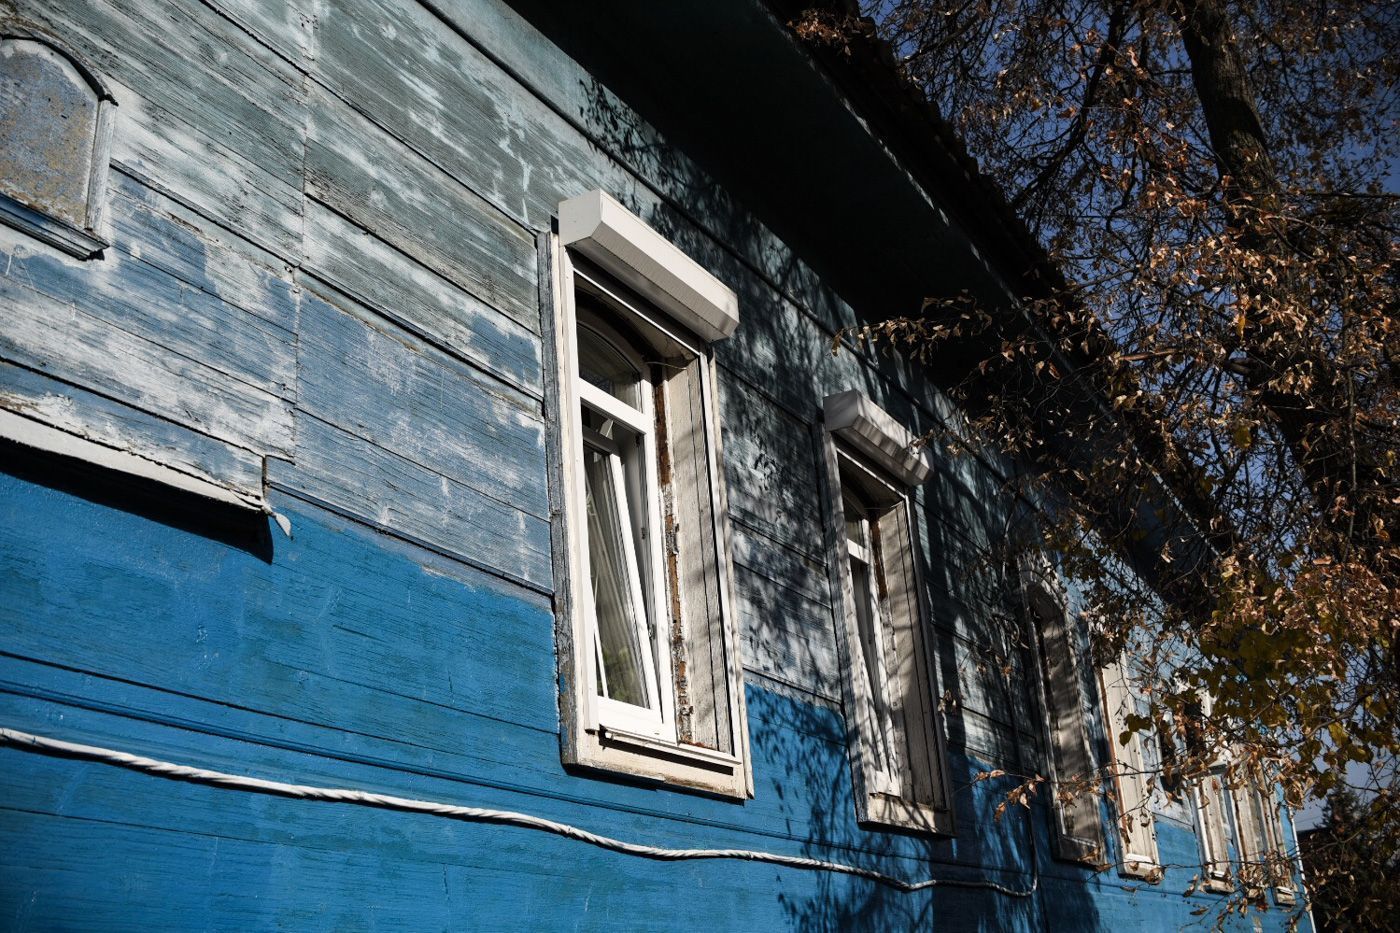 Что будет со старинными зданиями в Боровске, которые собираются снести? Дискуссия на RTVI